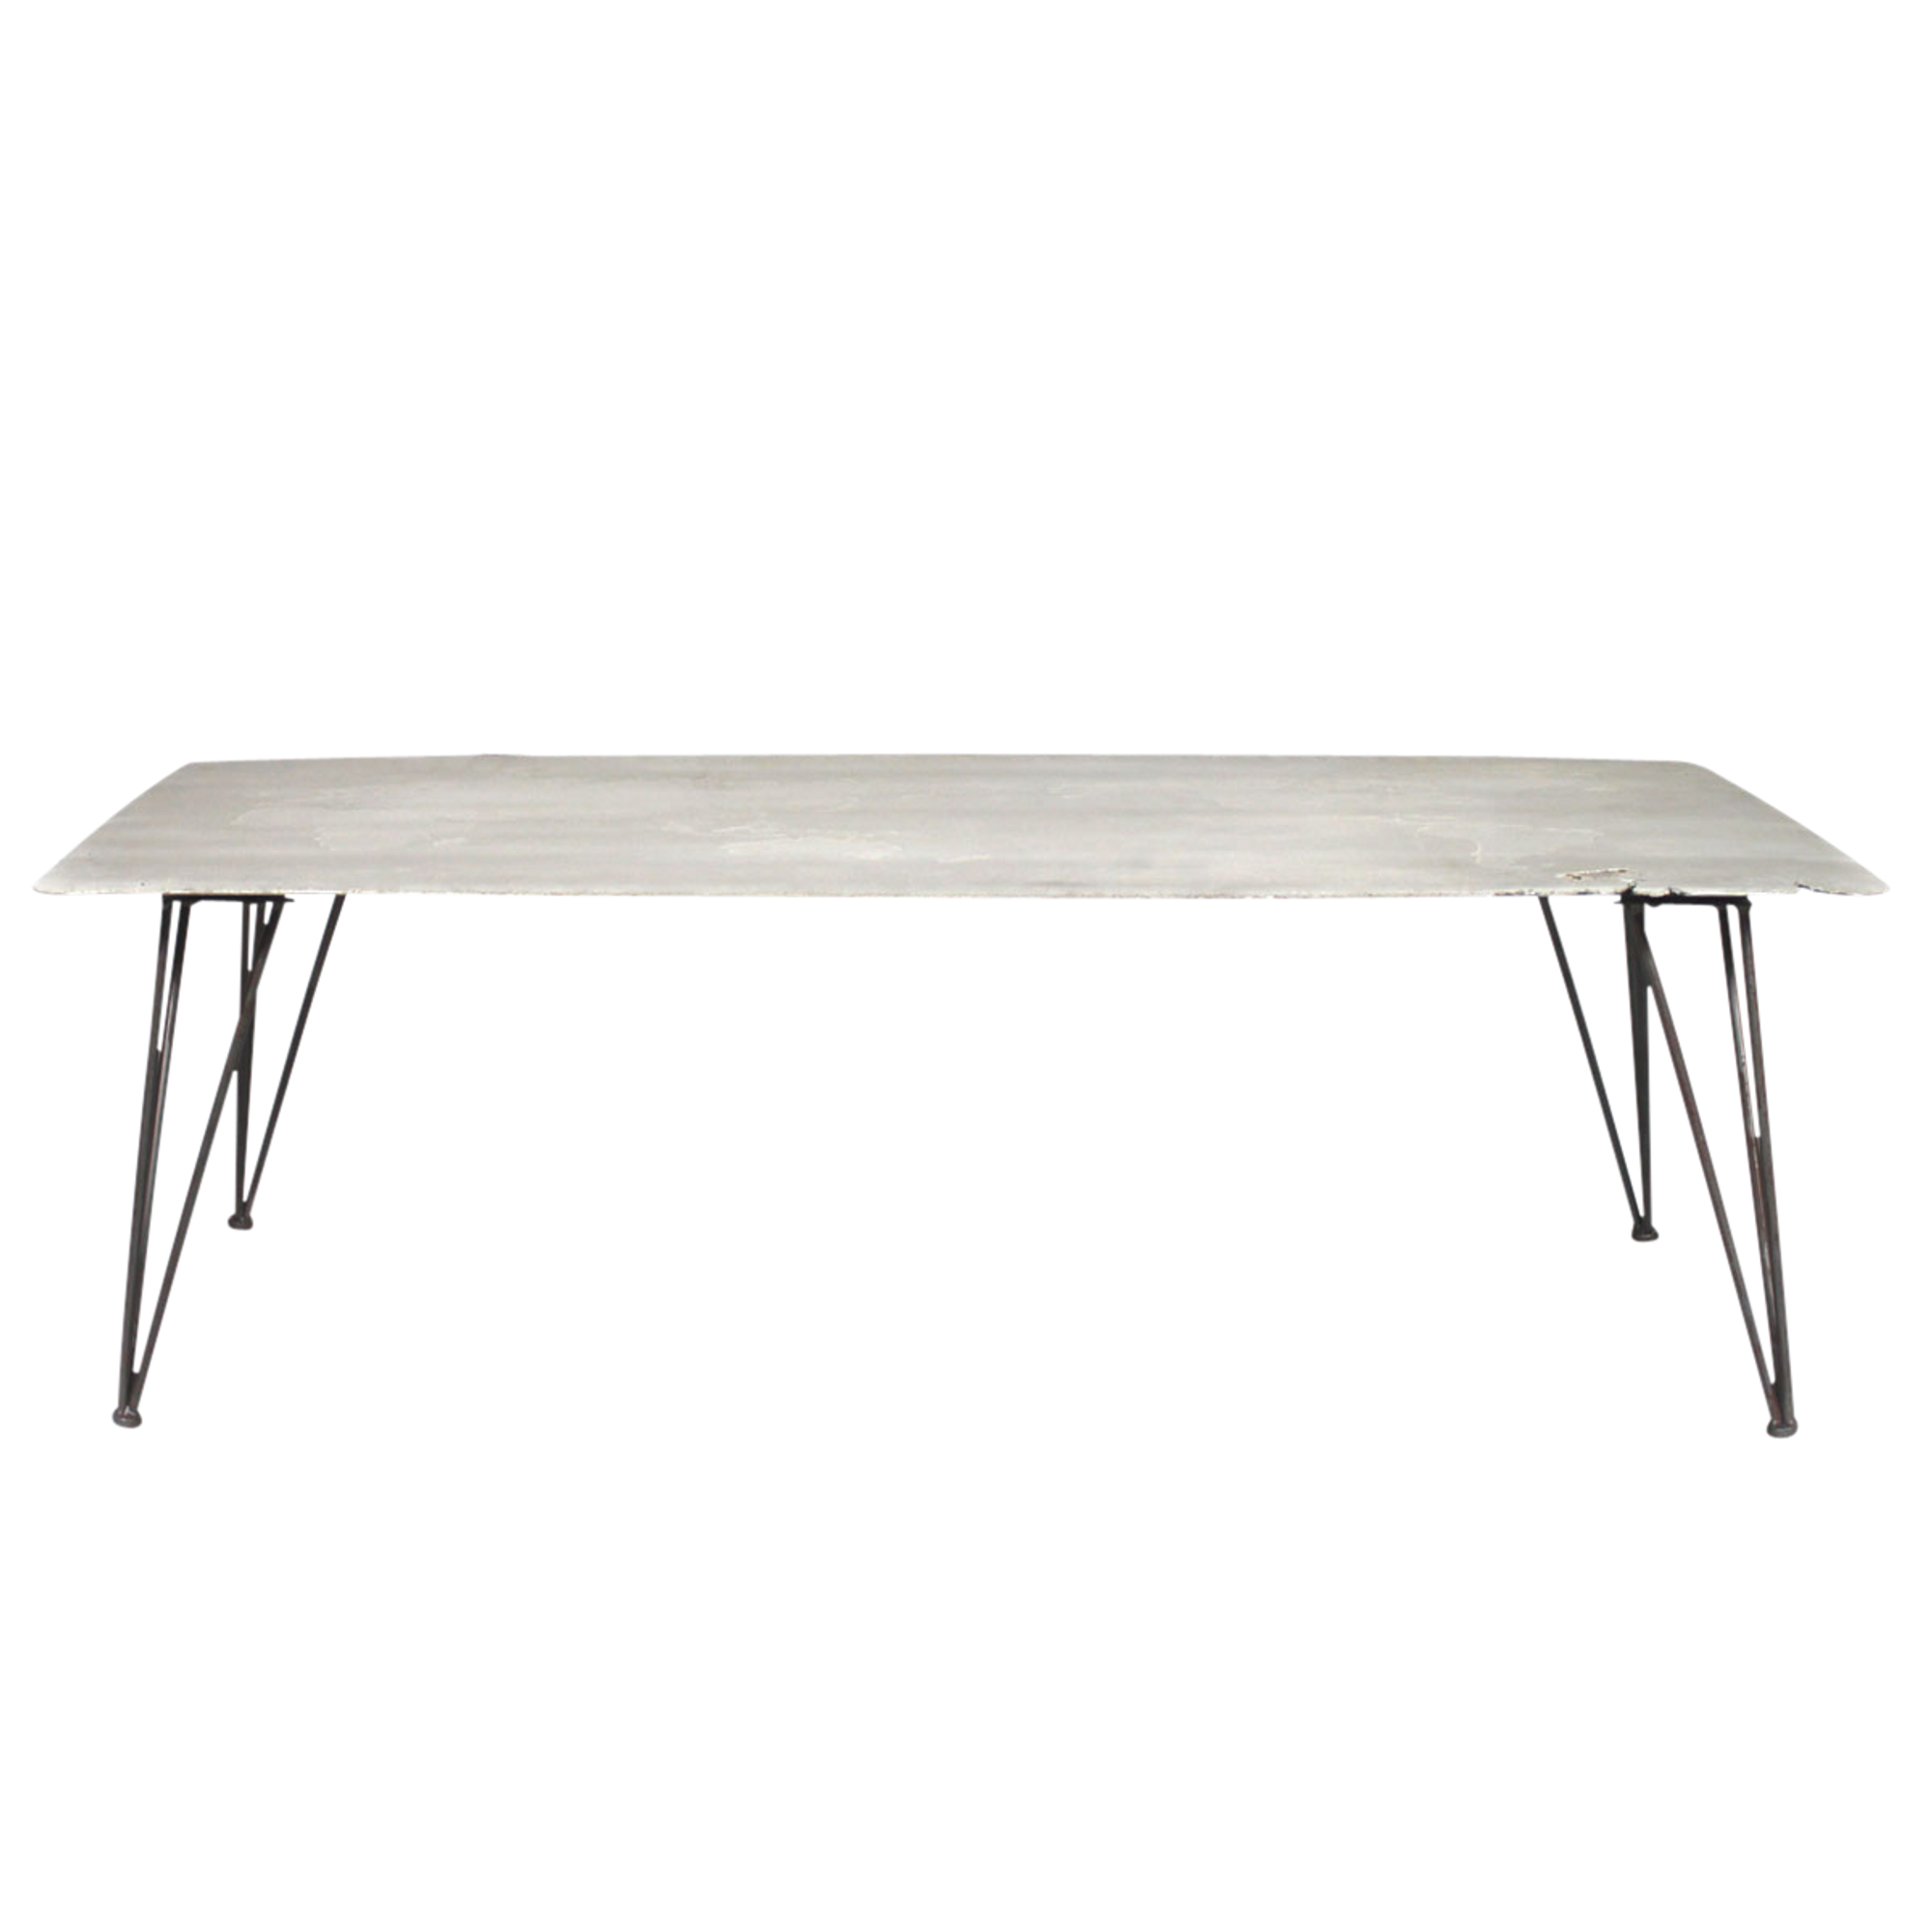 table basse moderne grise